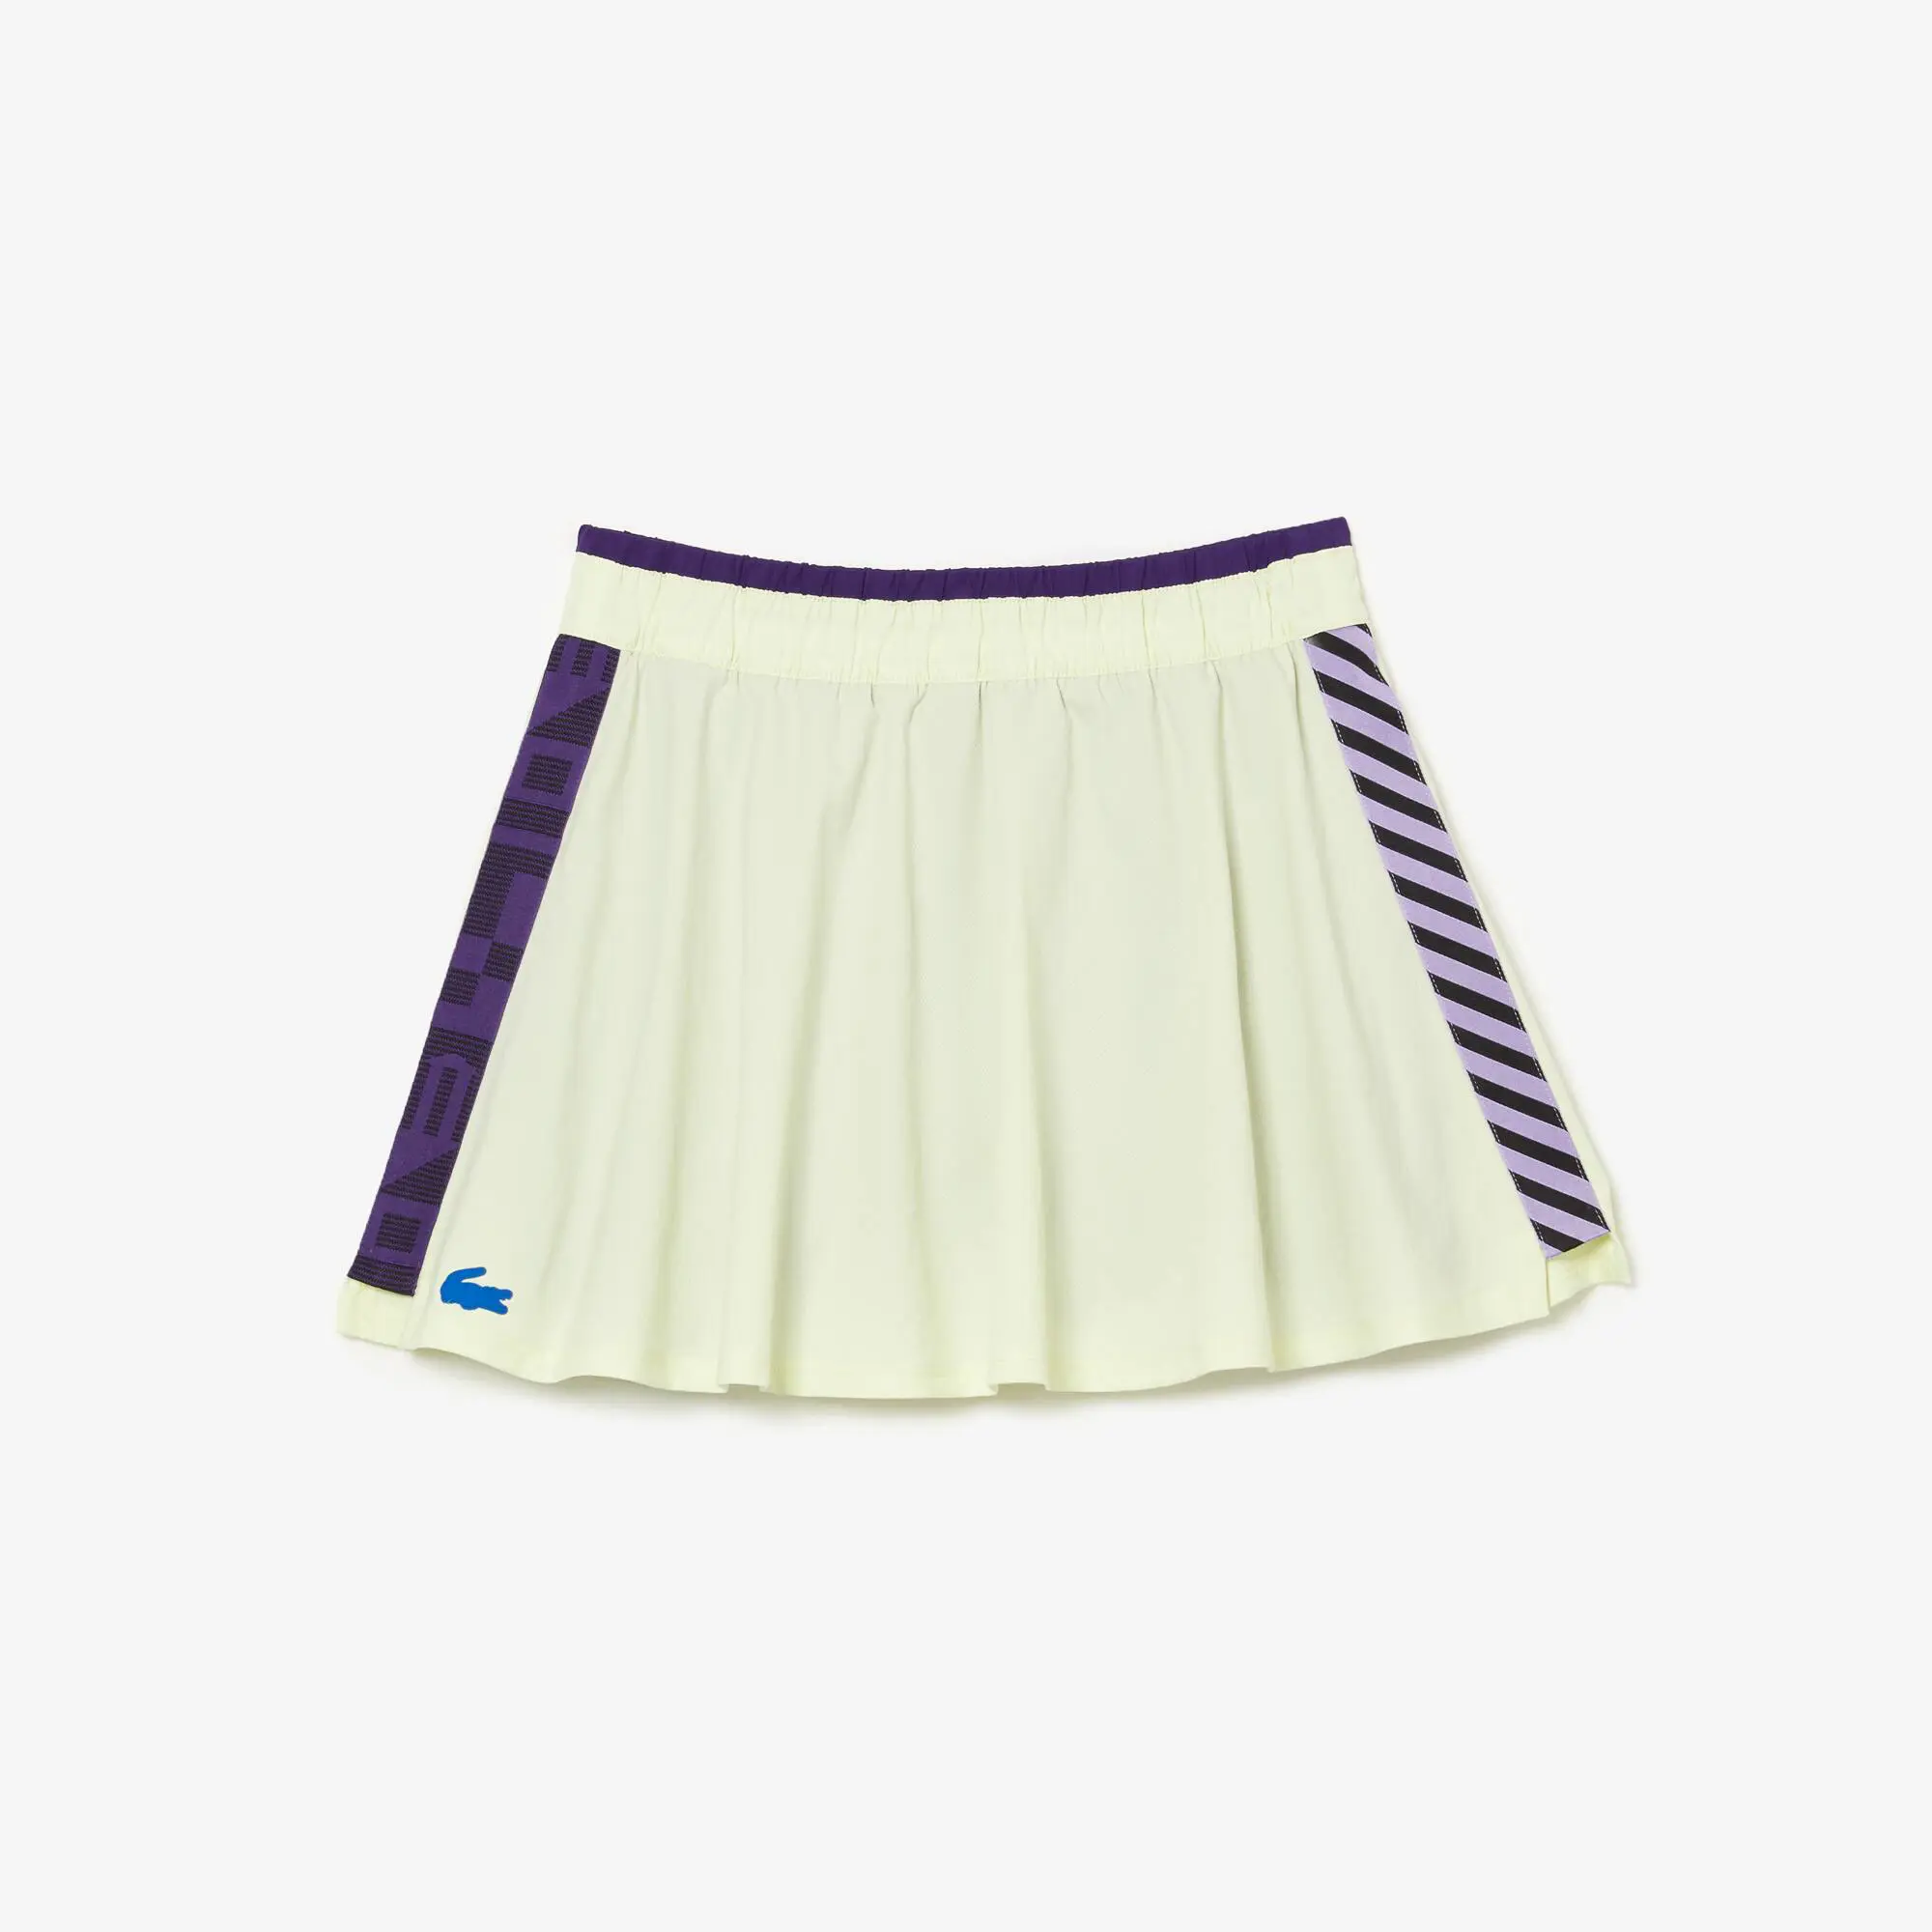 Lacoste Women's SPORT Built-In Short Tennis Skirt. 2